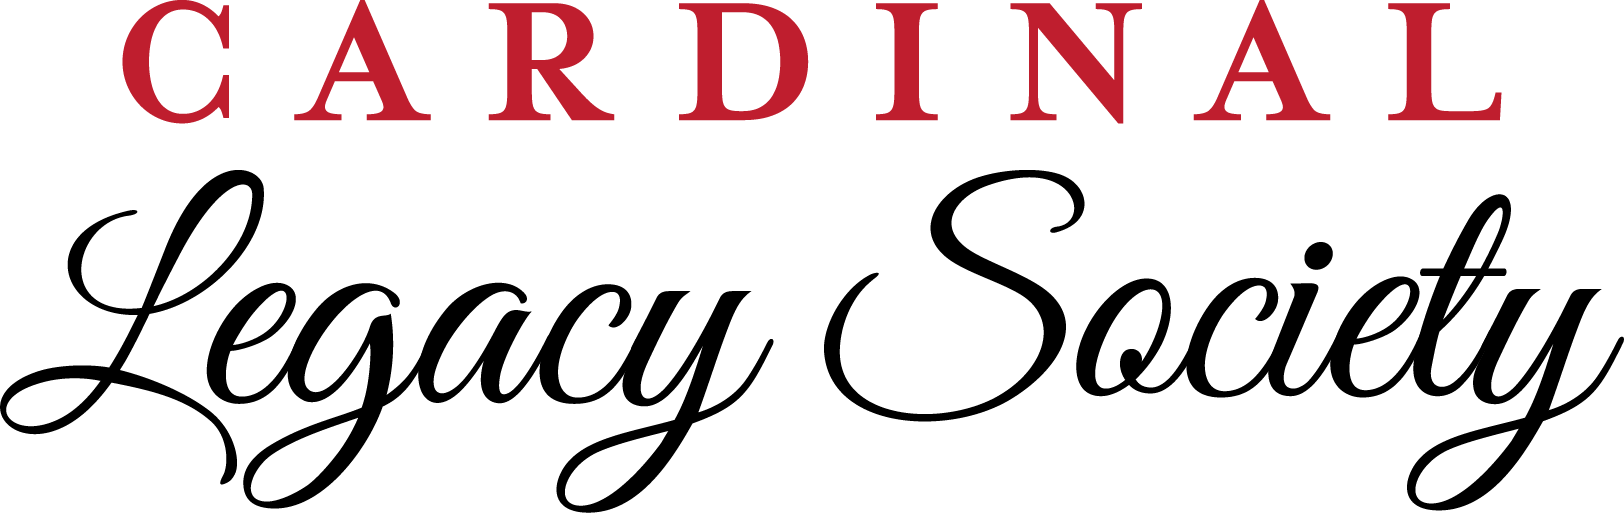 Cardinal Legacy logo